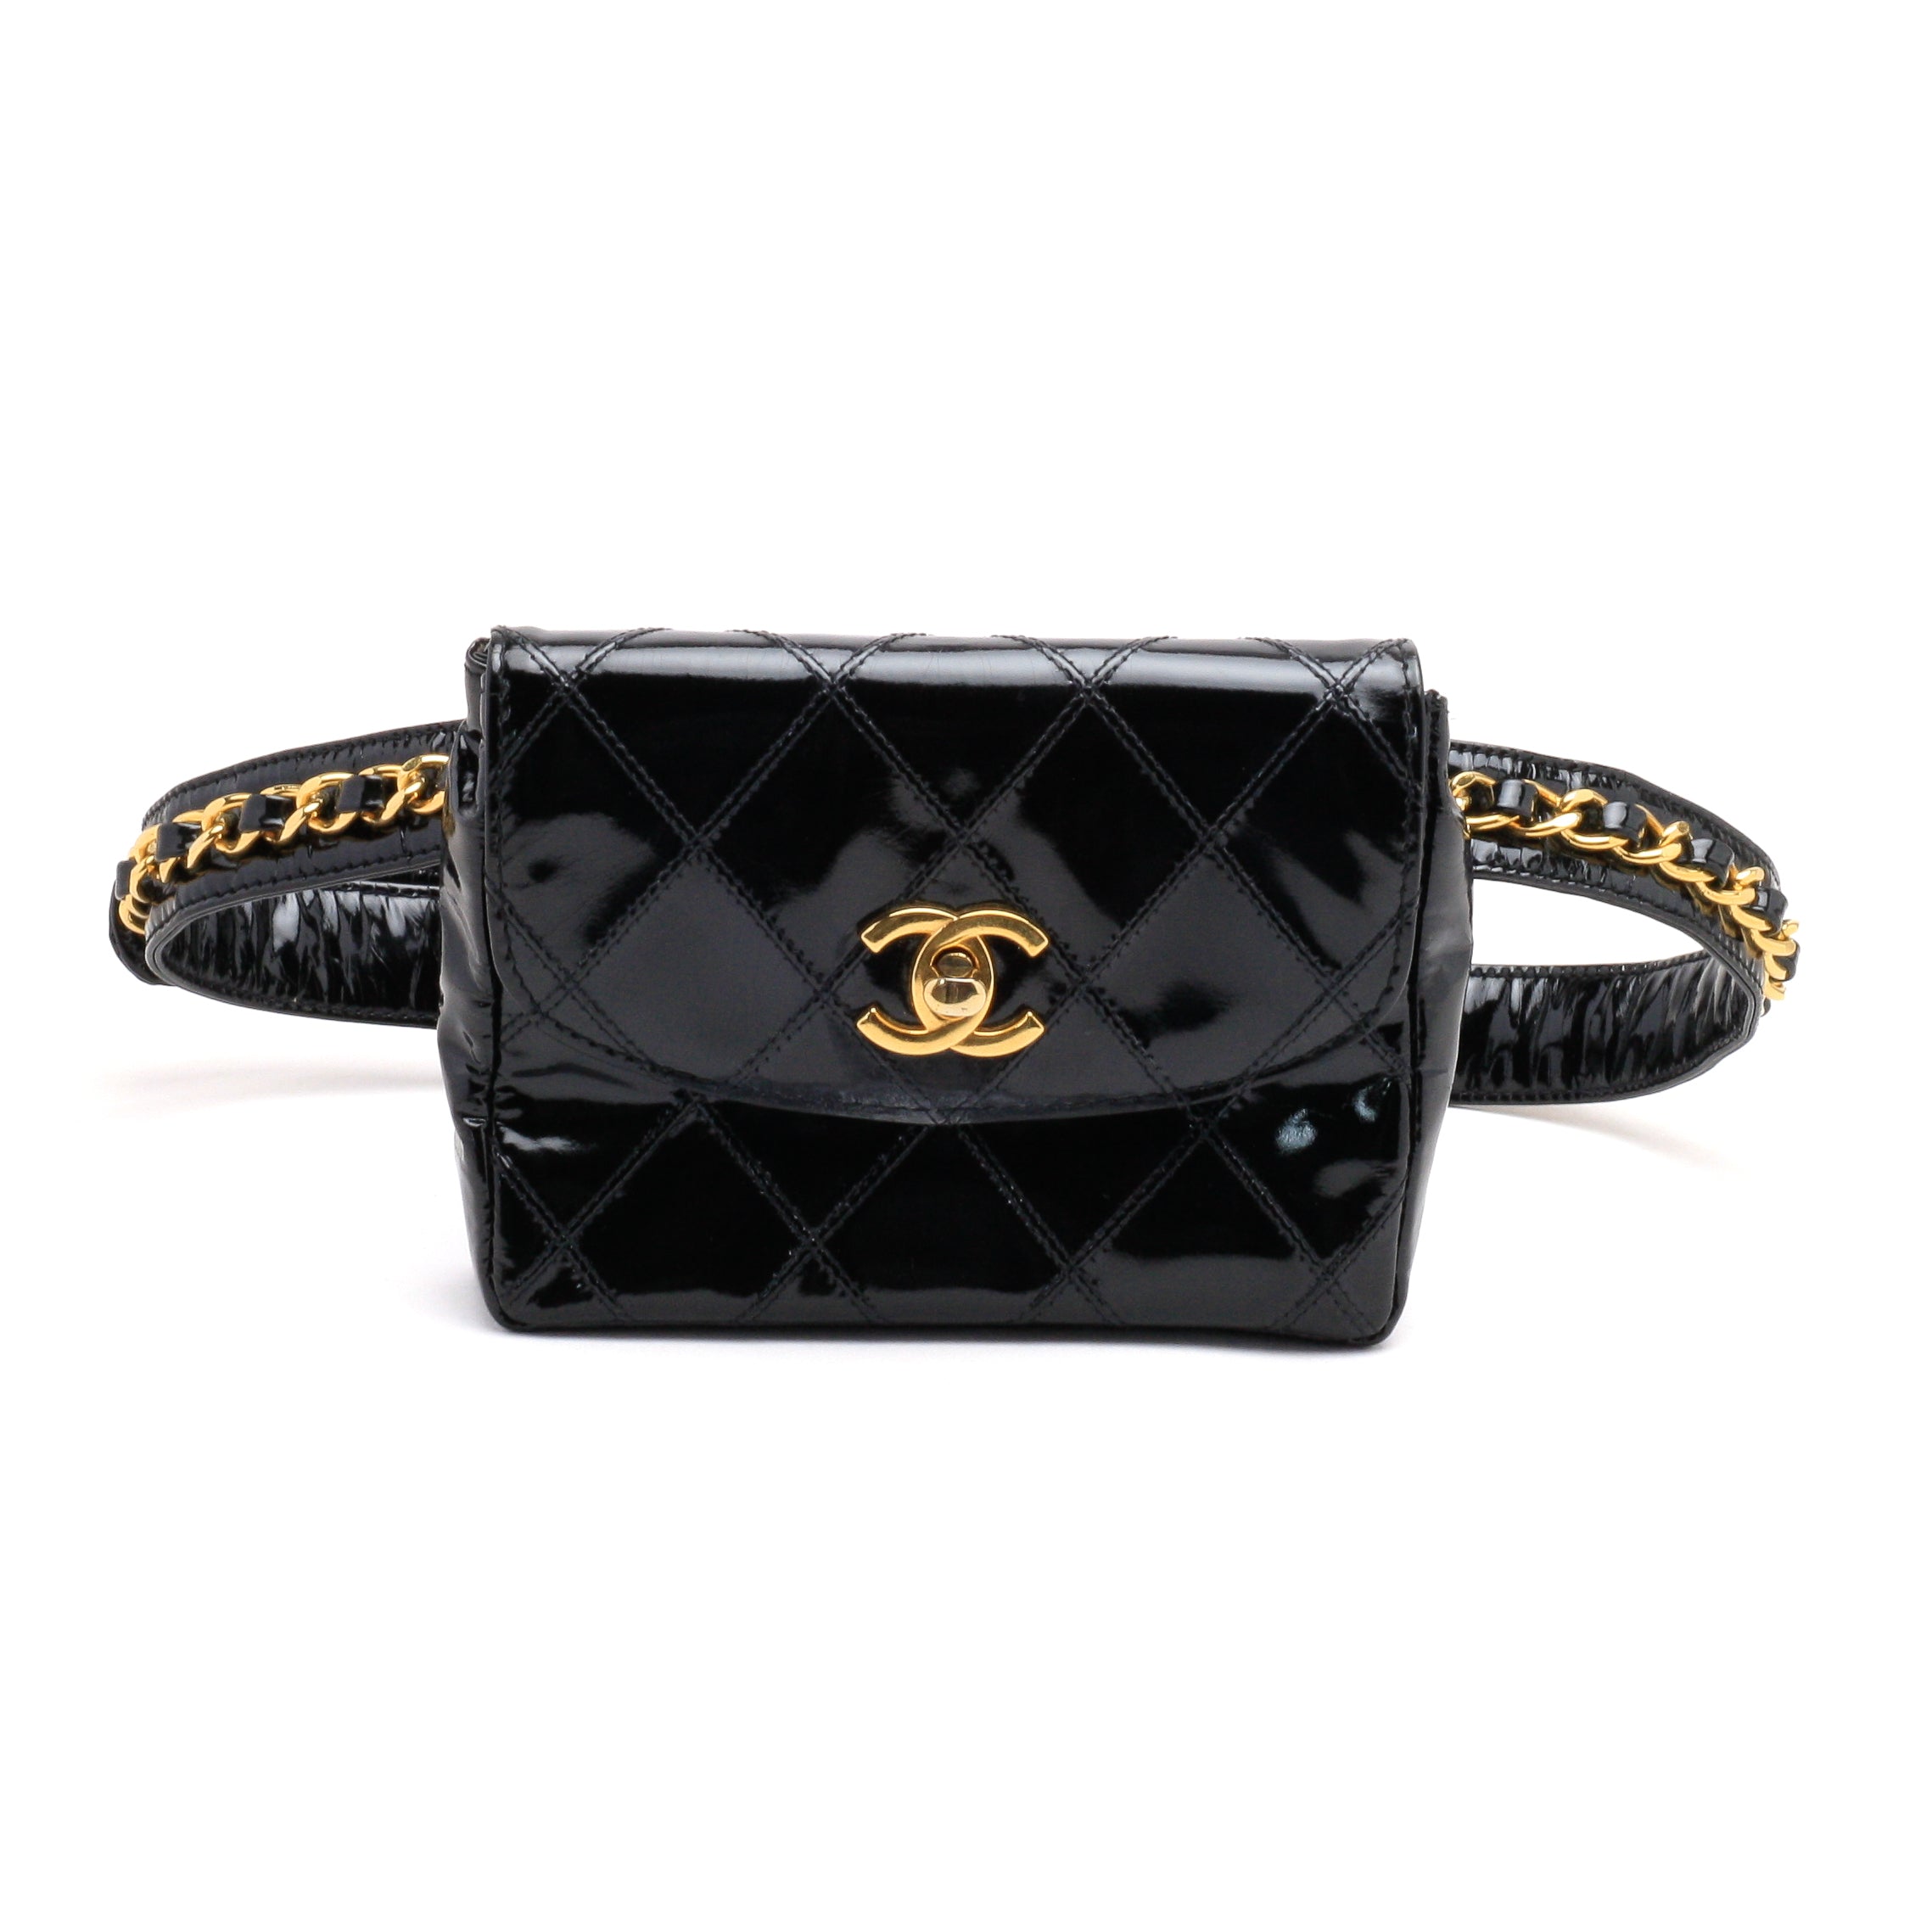 Chanel Belt Bag Bum Bag Patent Leather Black Vintage